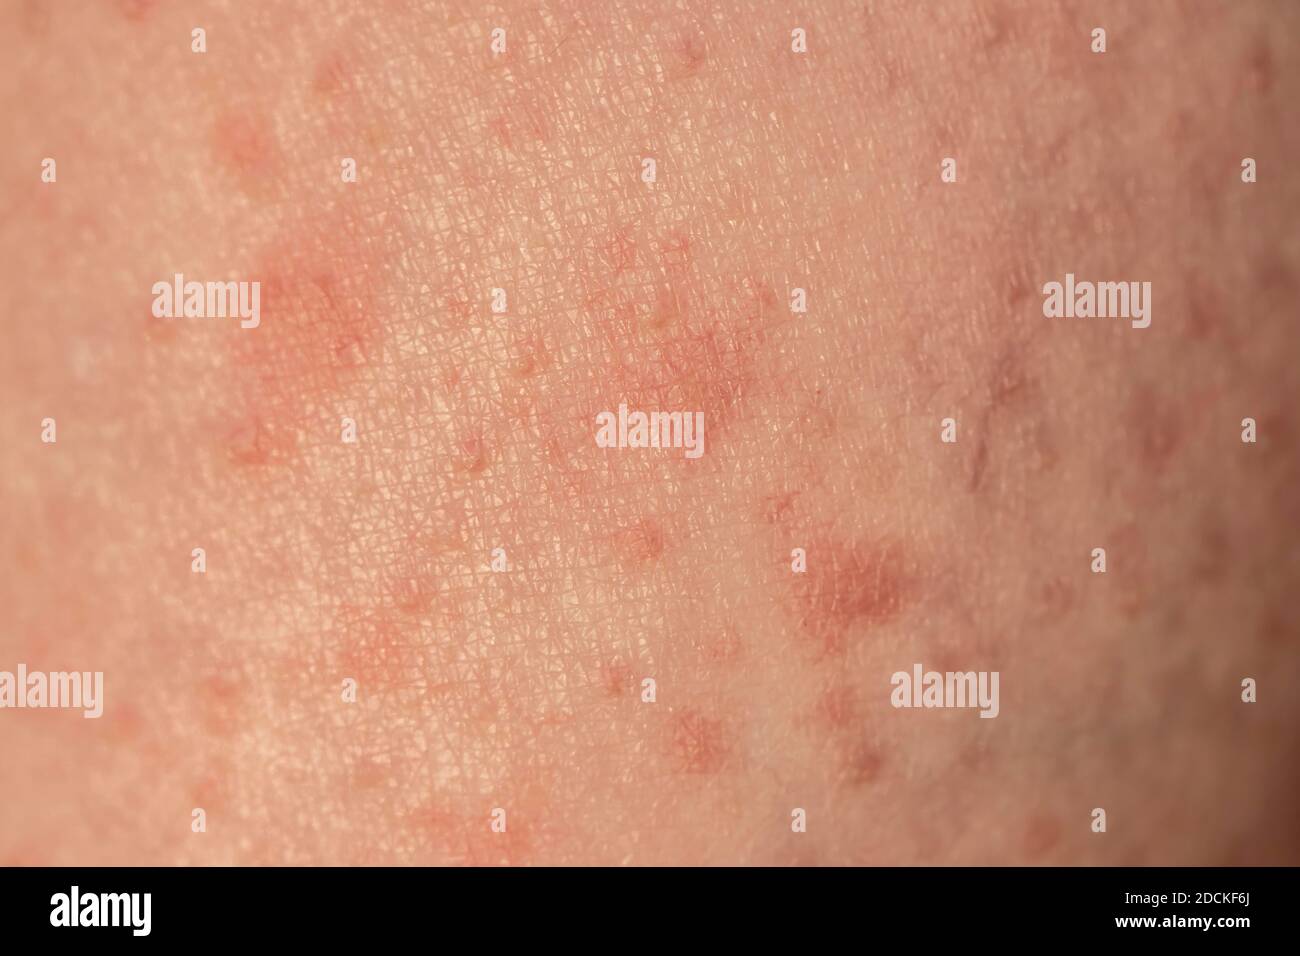 Skin with reddened spots, rash, allergy Stock Photo